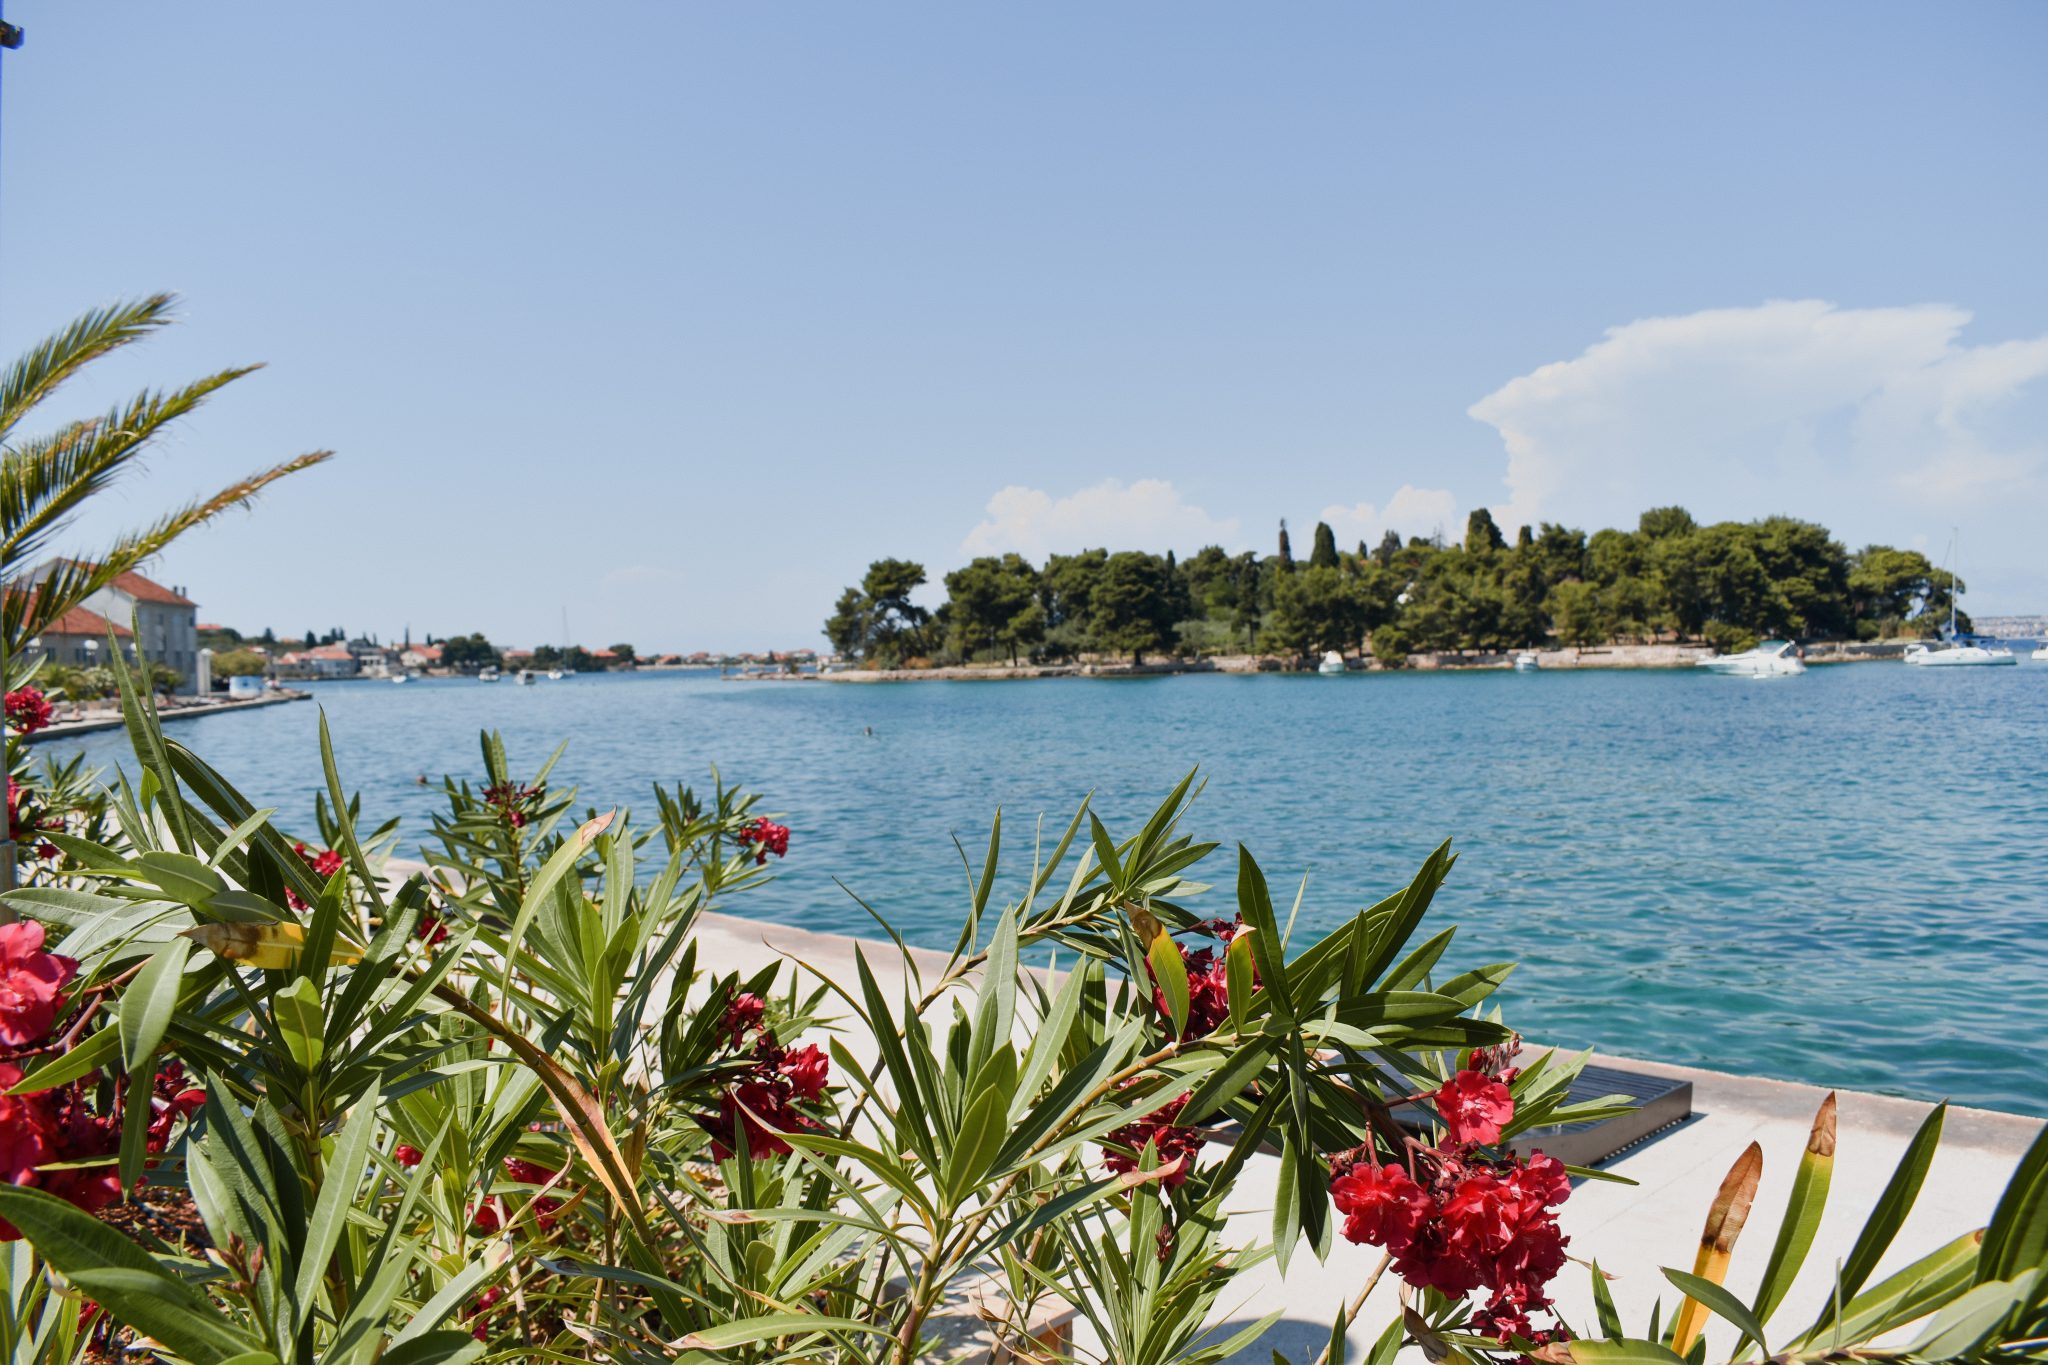 Preko, na Ilha de Ugljan - Um excelente passeio saindo de Zadar